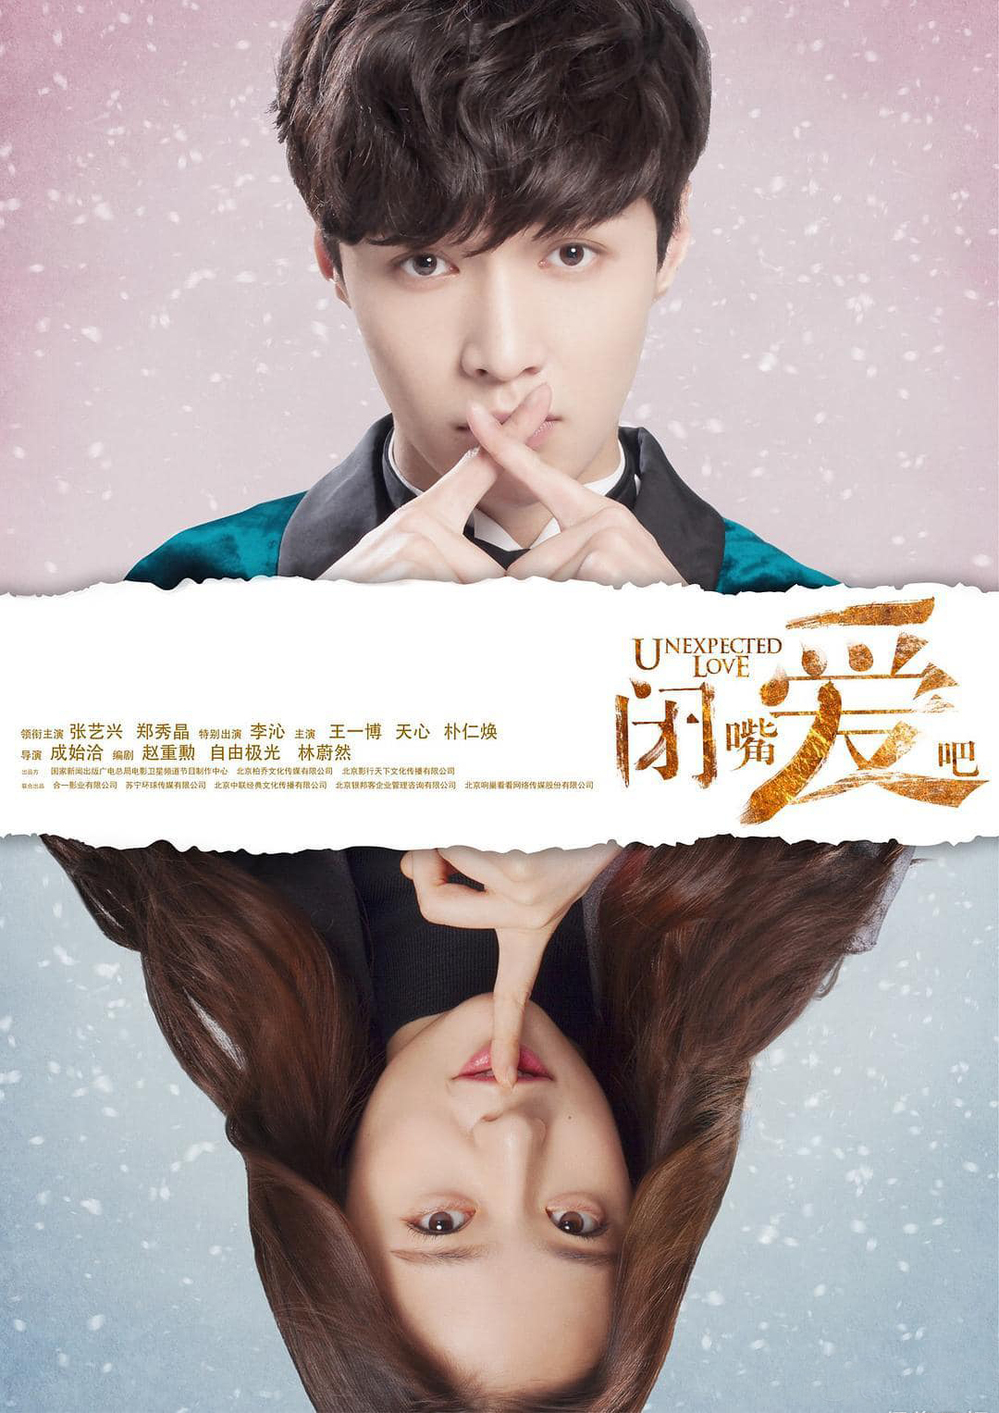  
Fan cực kỳ mong ngóng ngày ra mắt bộ phim của Trương Nghệ Hưng và Krystal (Ảnh Weibo)